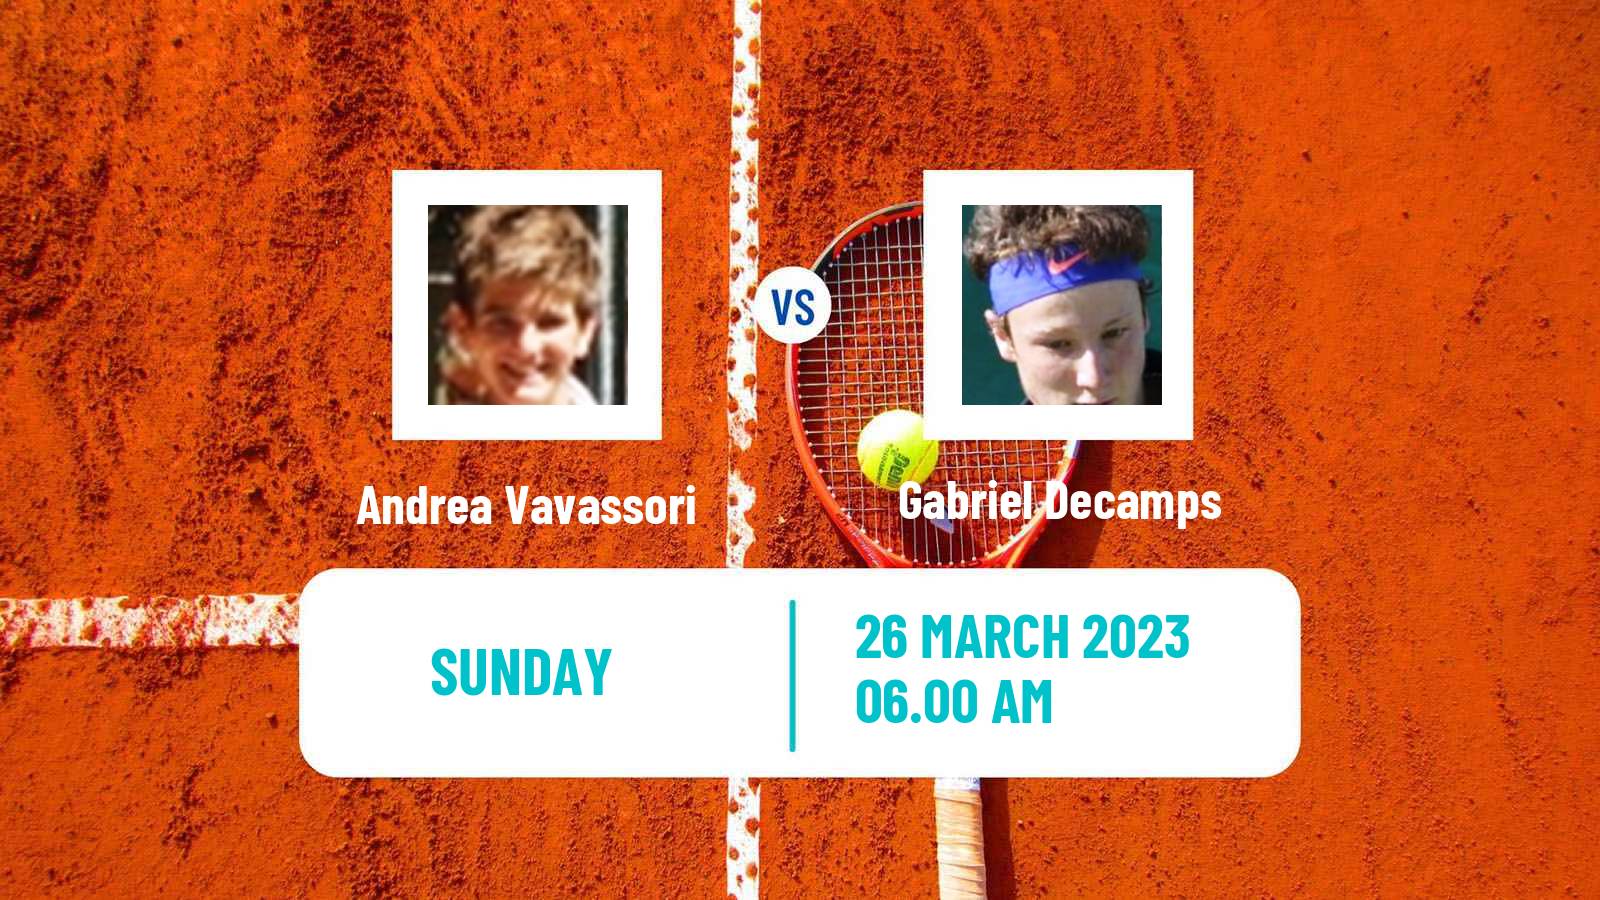 Tennis ATP Challenger Andrea Vavassori - Gabriel Decamps